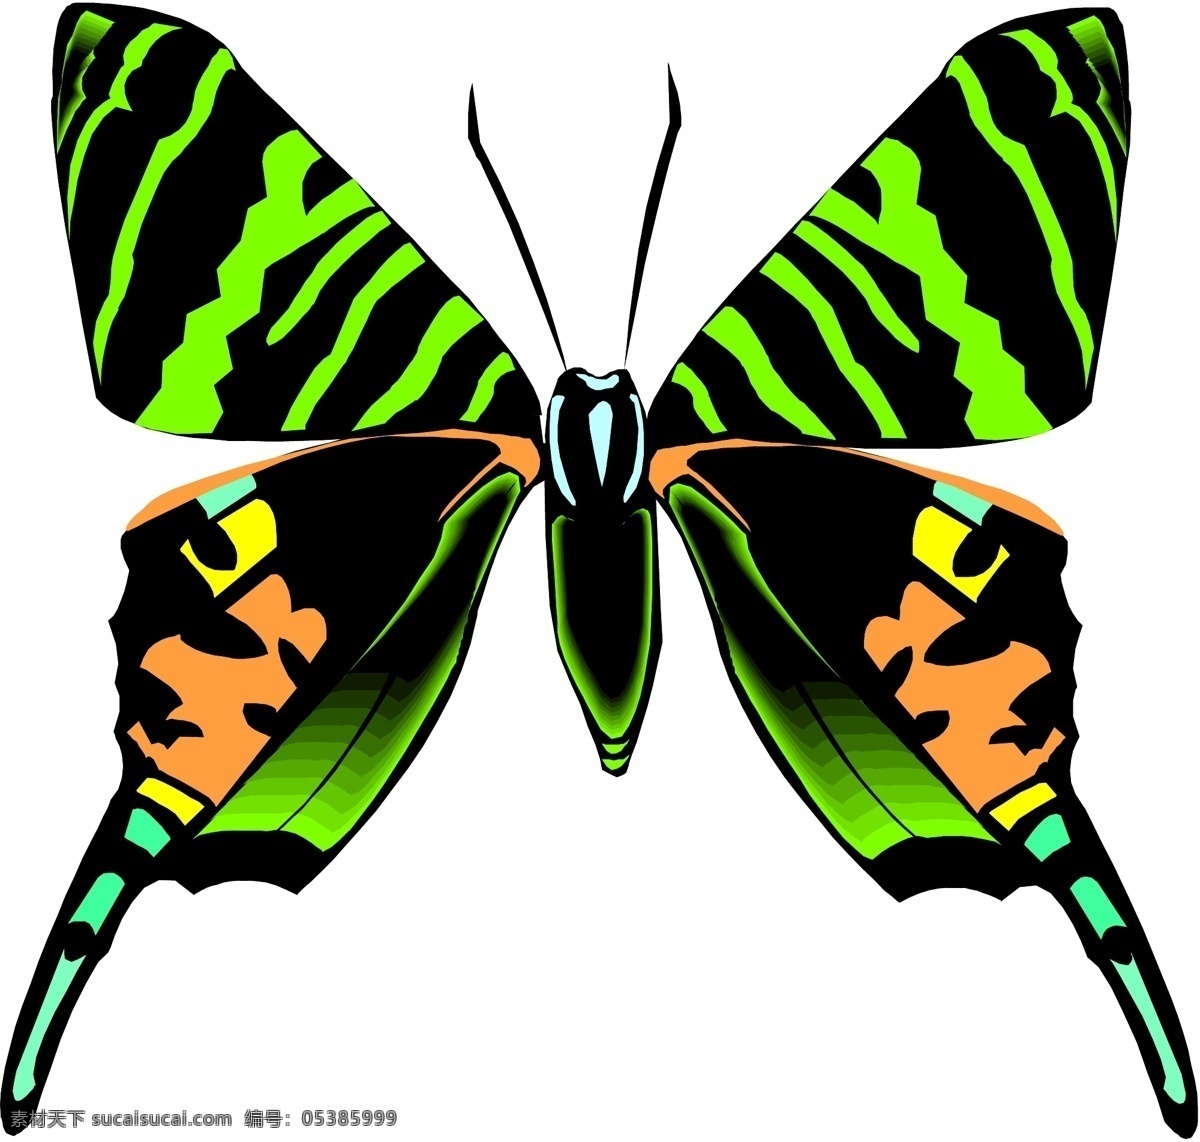 3d 昆虫 蝴蝶 昆虫矢量图 生物 世界 矢量 矢量图 其他矢量图